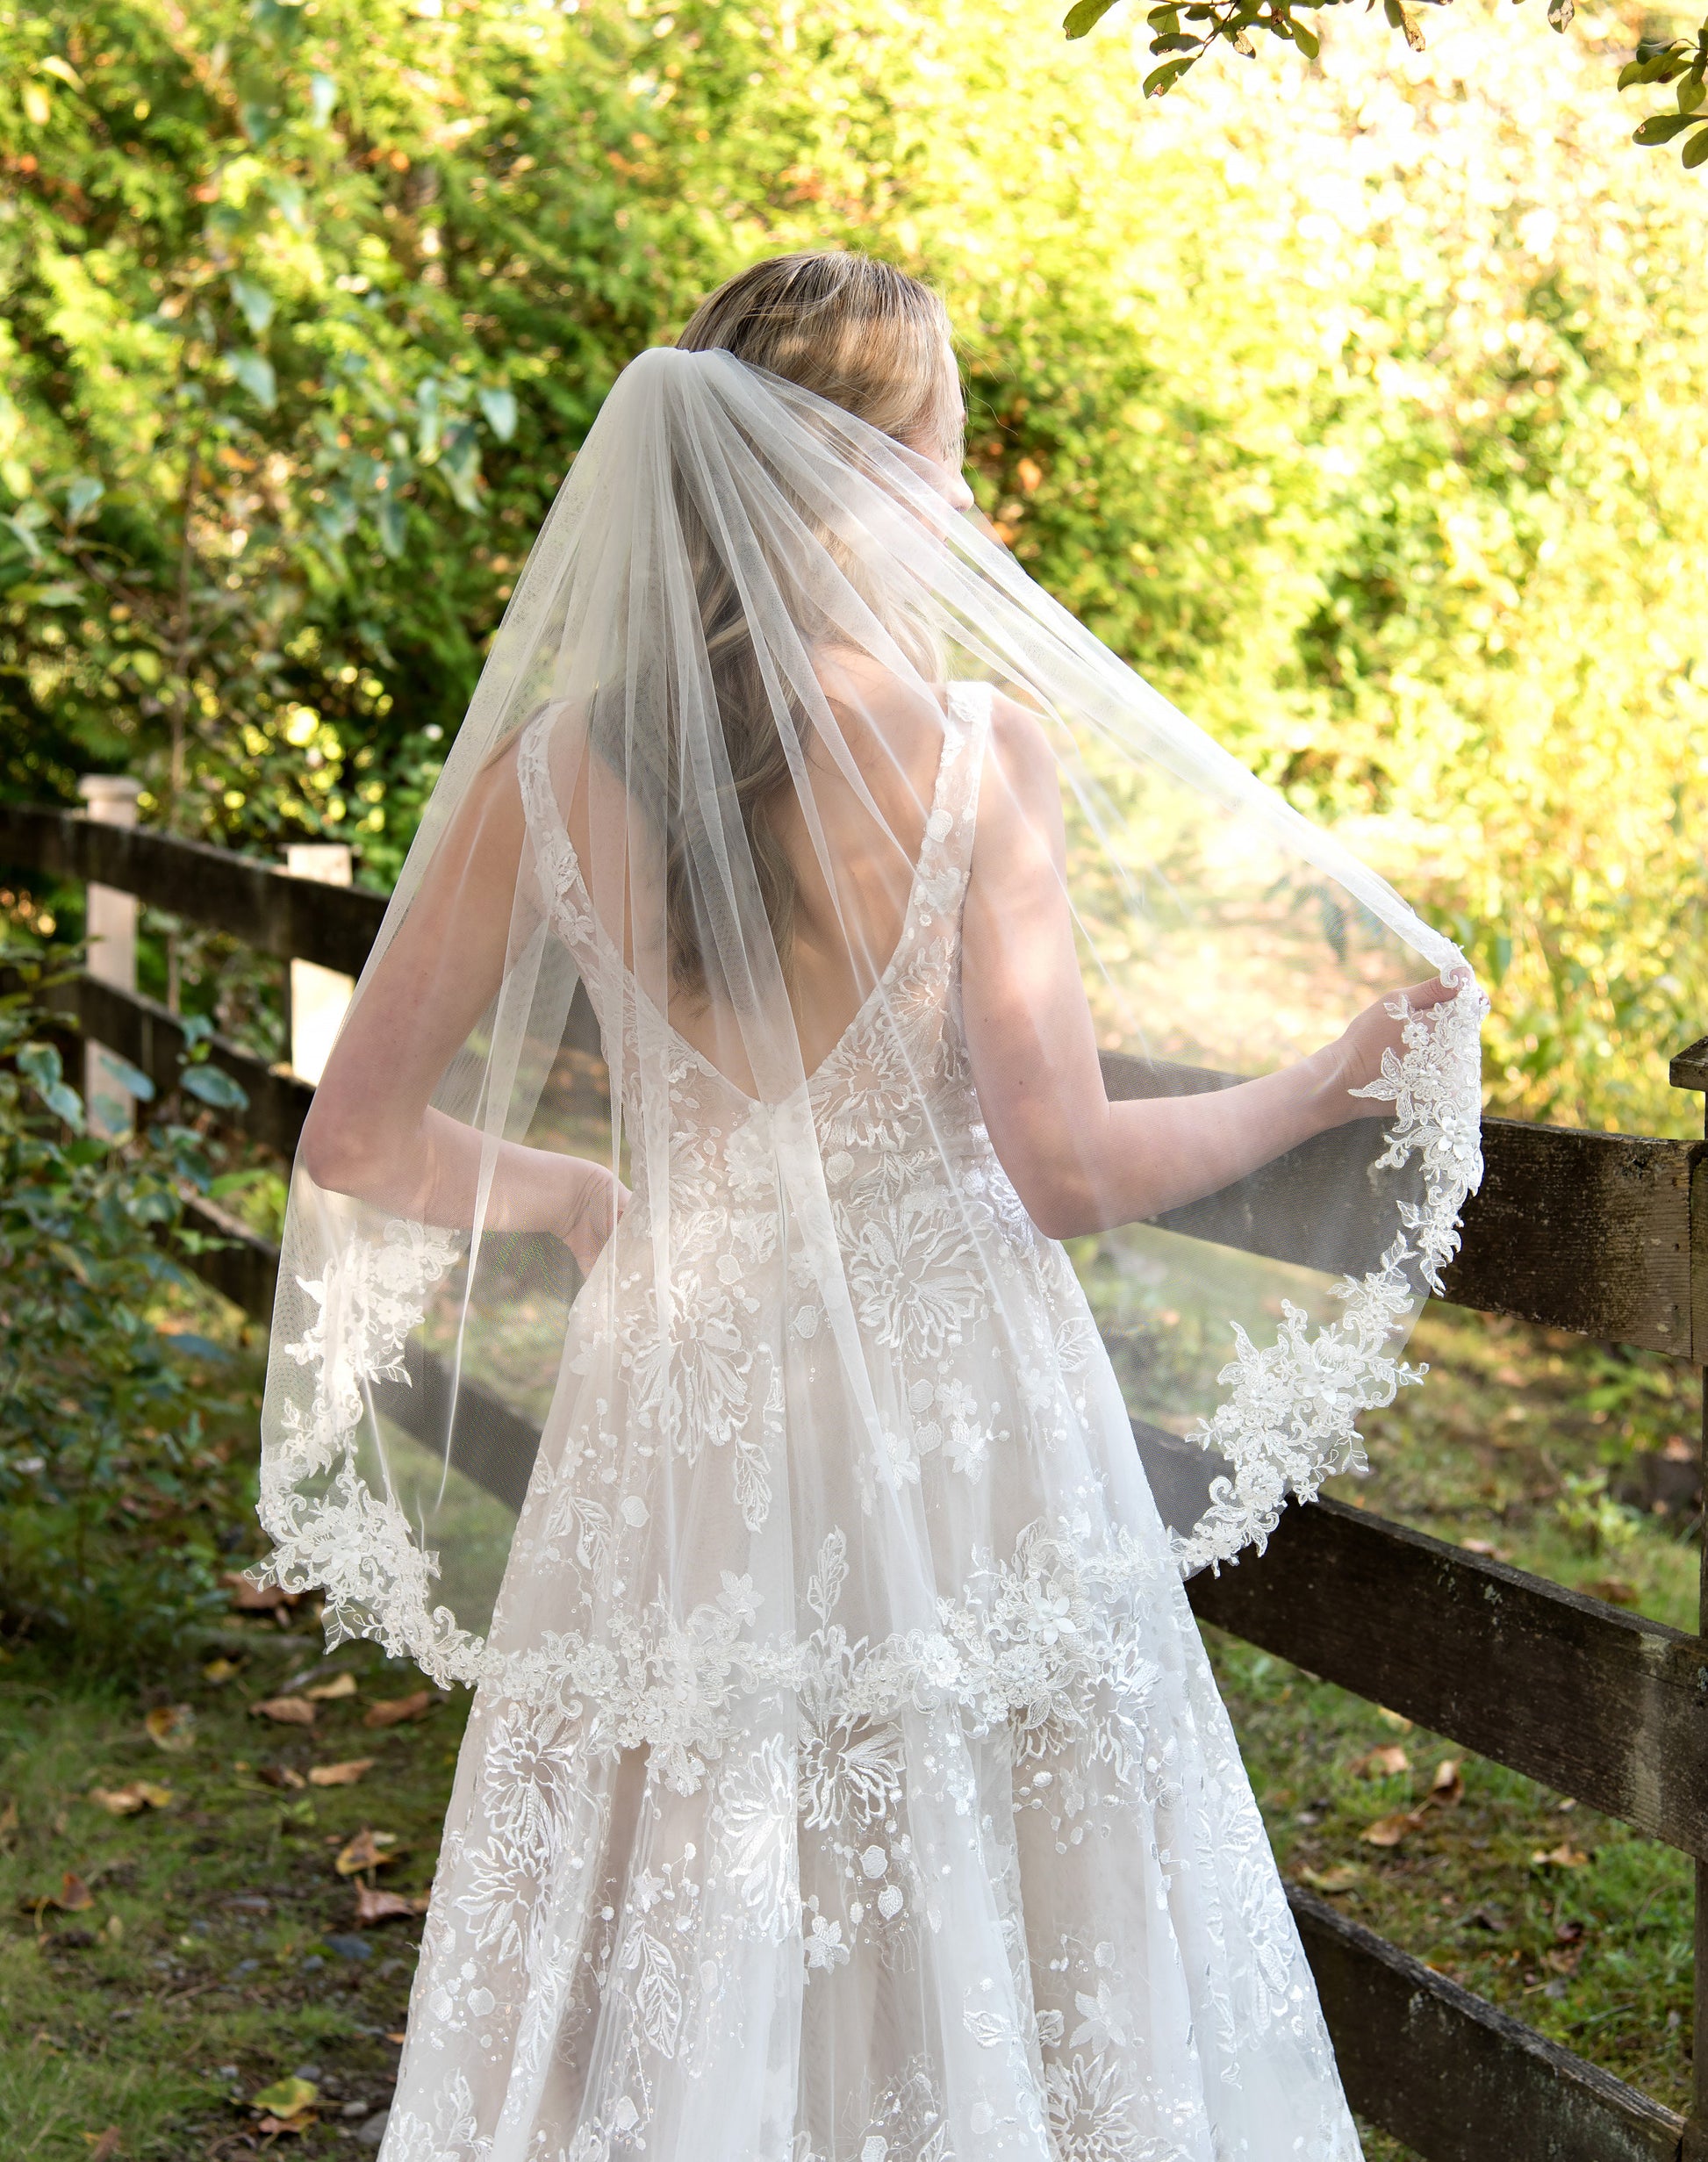 Waltz / Chapel / Cathedral wedding veil, bridal veil, wedding veil ivory, wedding veil lace trim, beaded lace veil, beaded veil